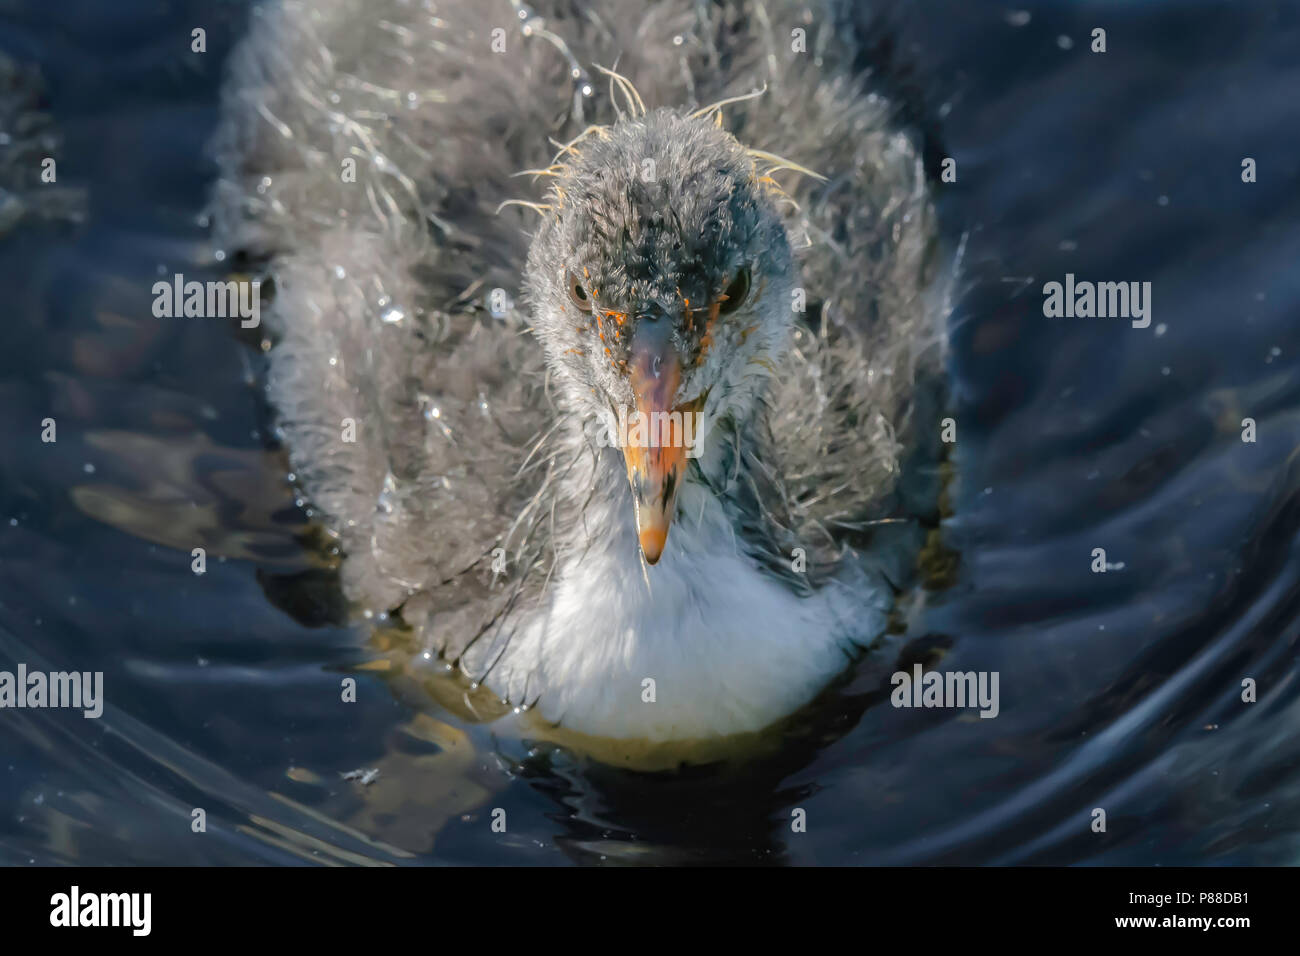 Blässhuhn Küken schwimmend am Seeufer. Close up Portrait von jungen Wasservogelabkommens. Schönen british Tierwelt. Atemberaubende Natur, Großbritannien. Niedlich und flauschig Blässhuhn Youngster. Stockfoto